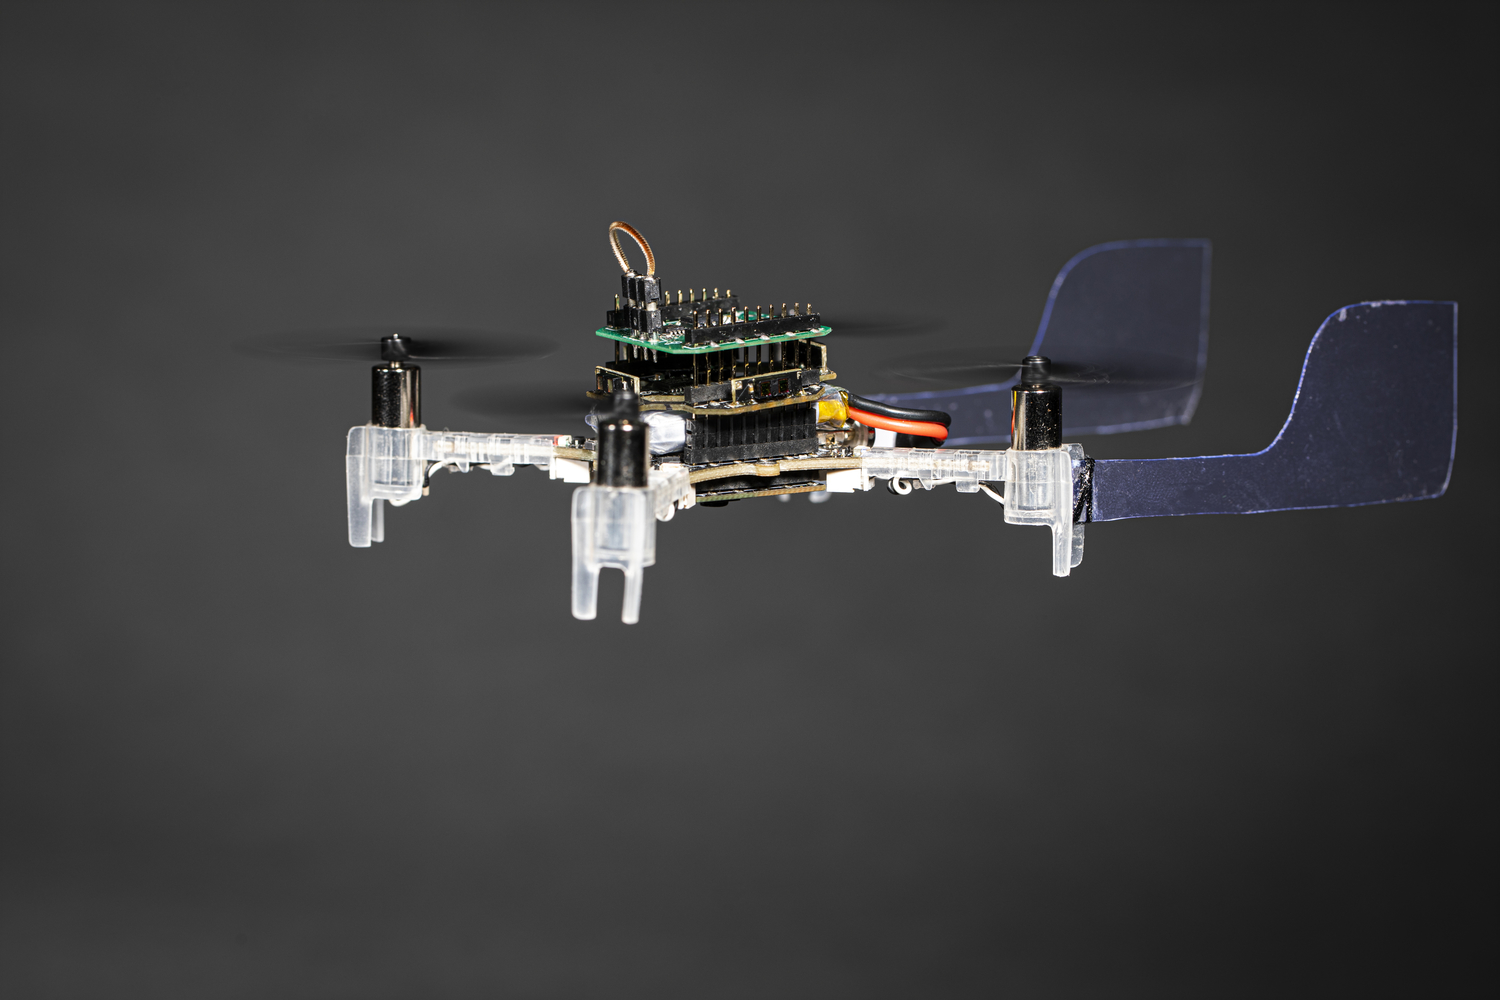 The Smellicopter autonomous drone